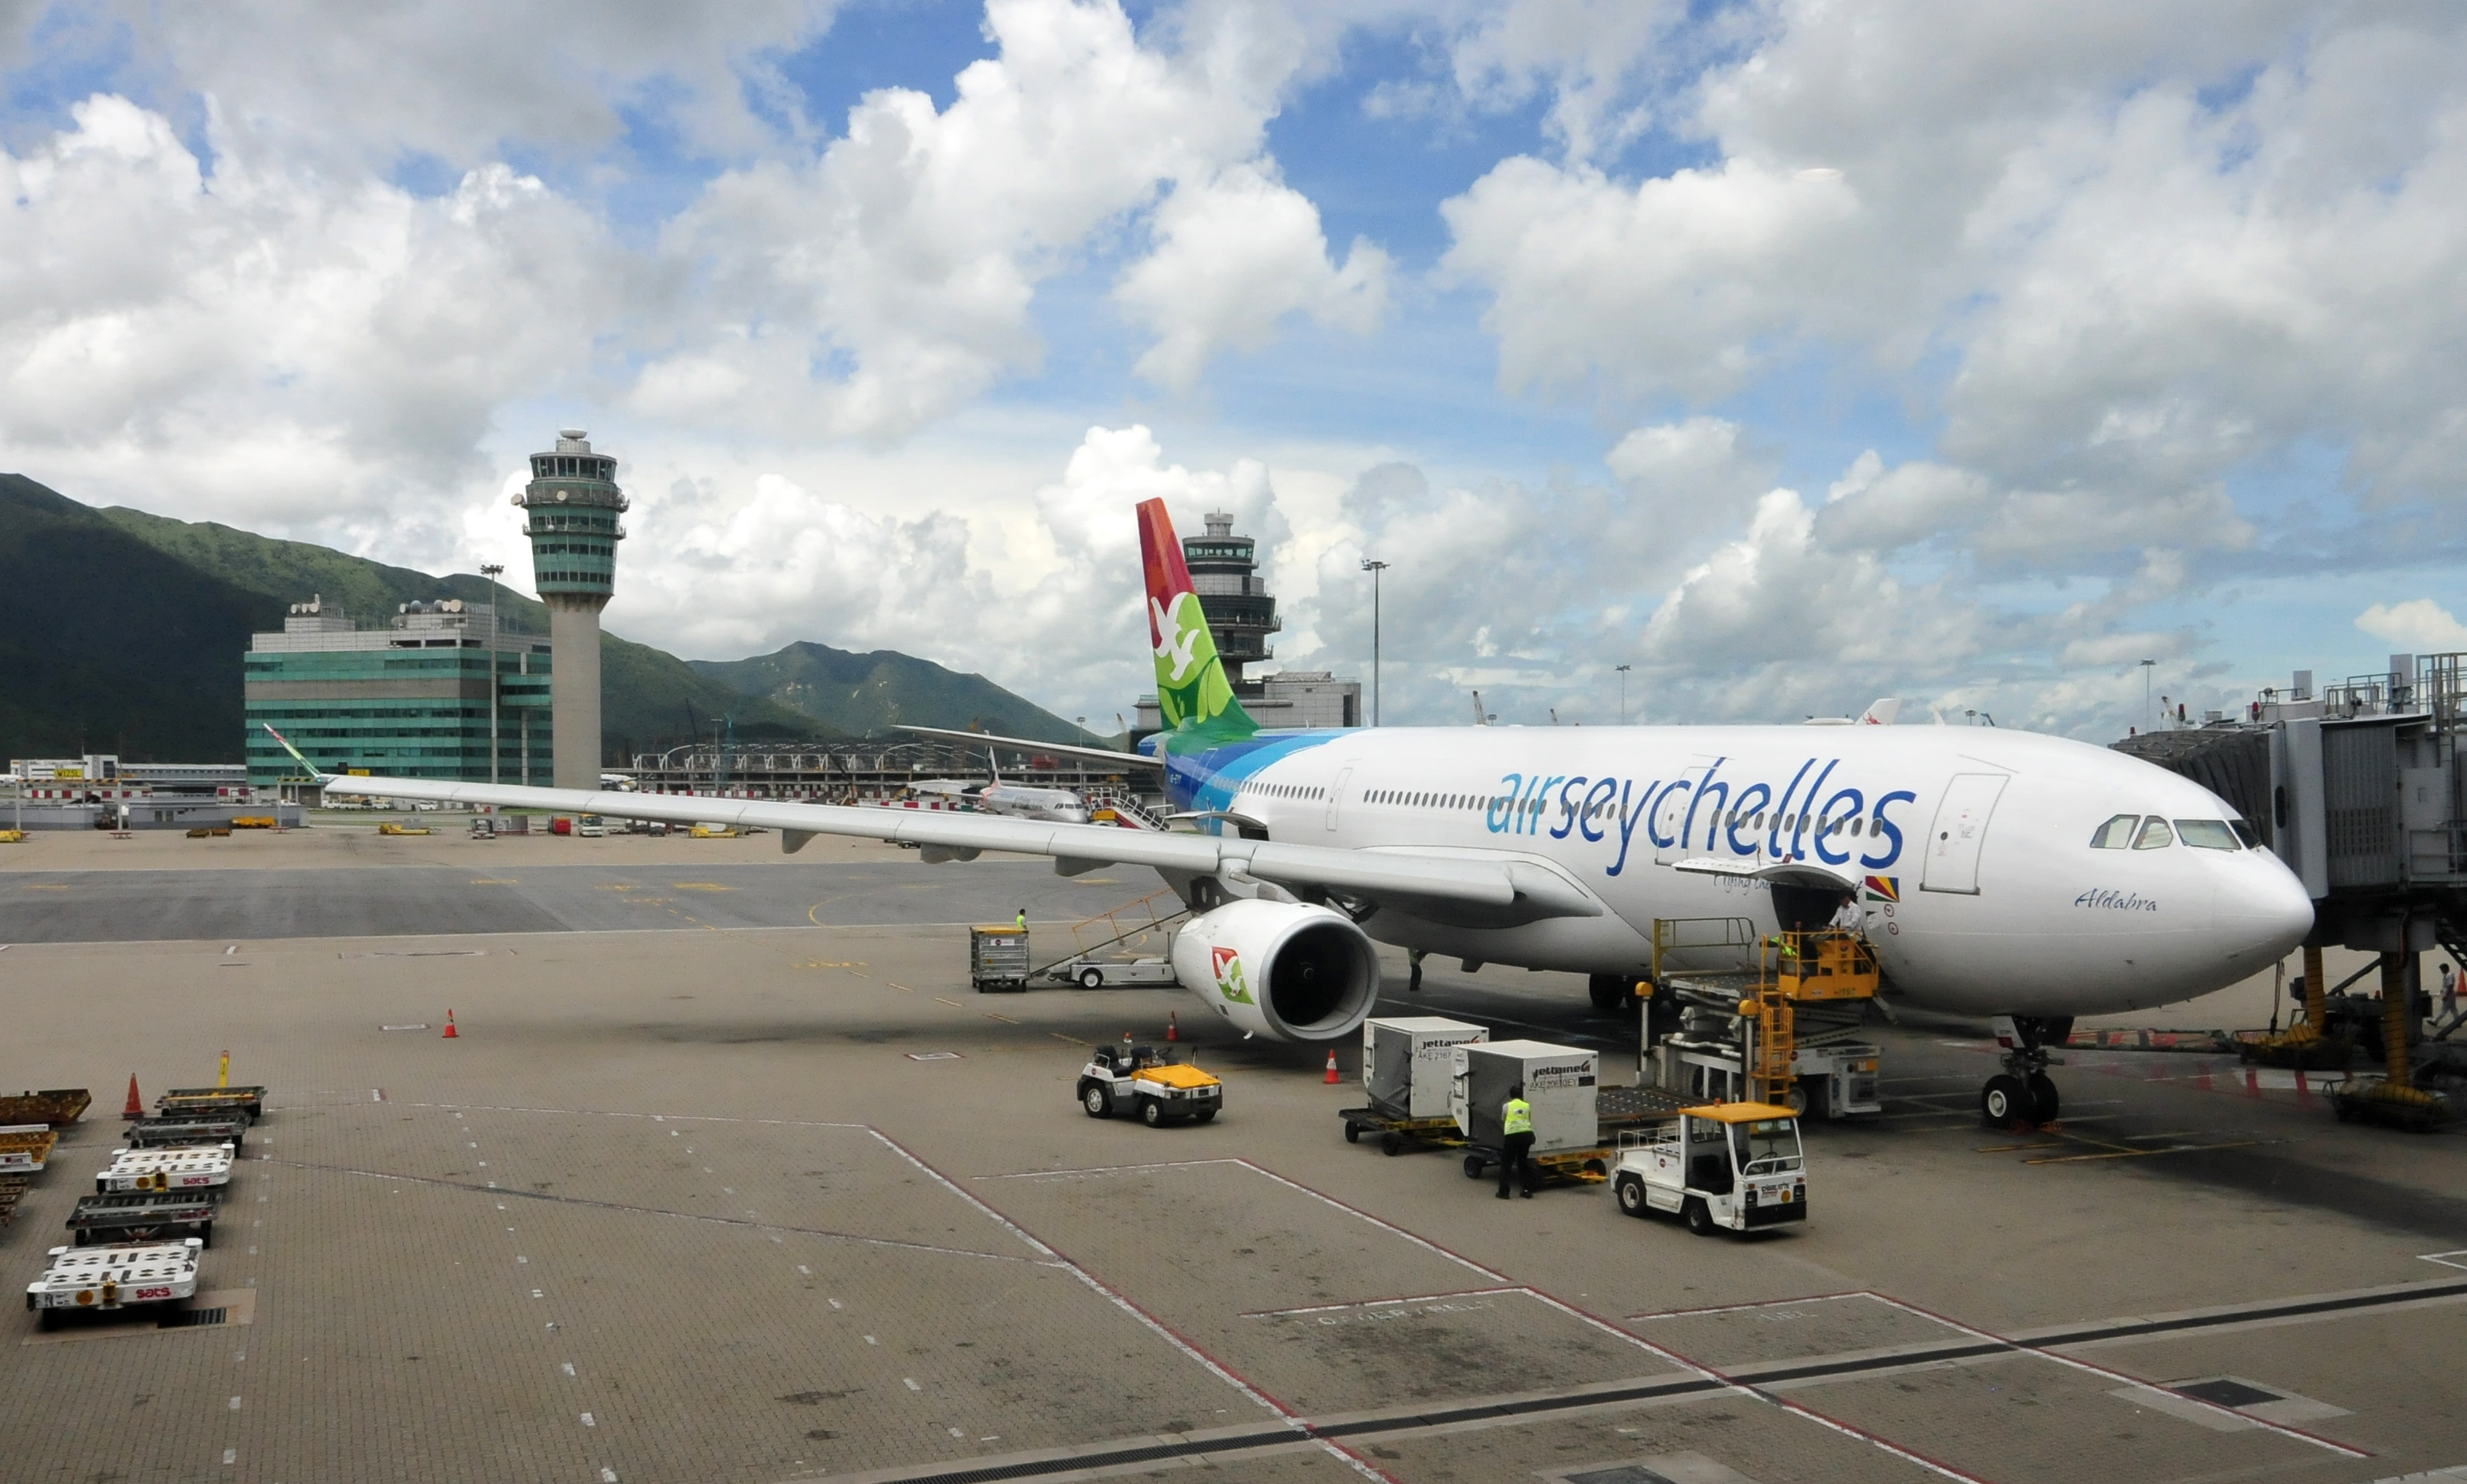 13-08-07 - Airbus A330 - hongkong airport